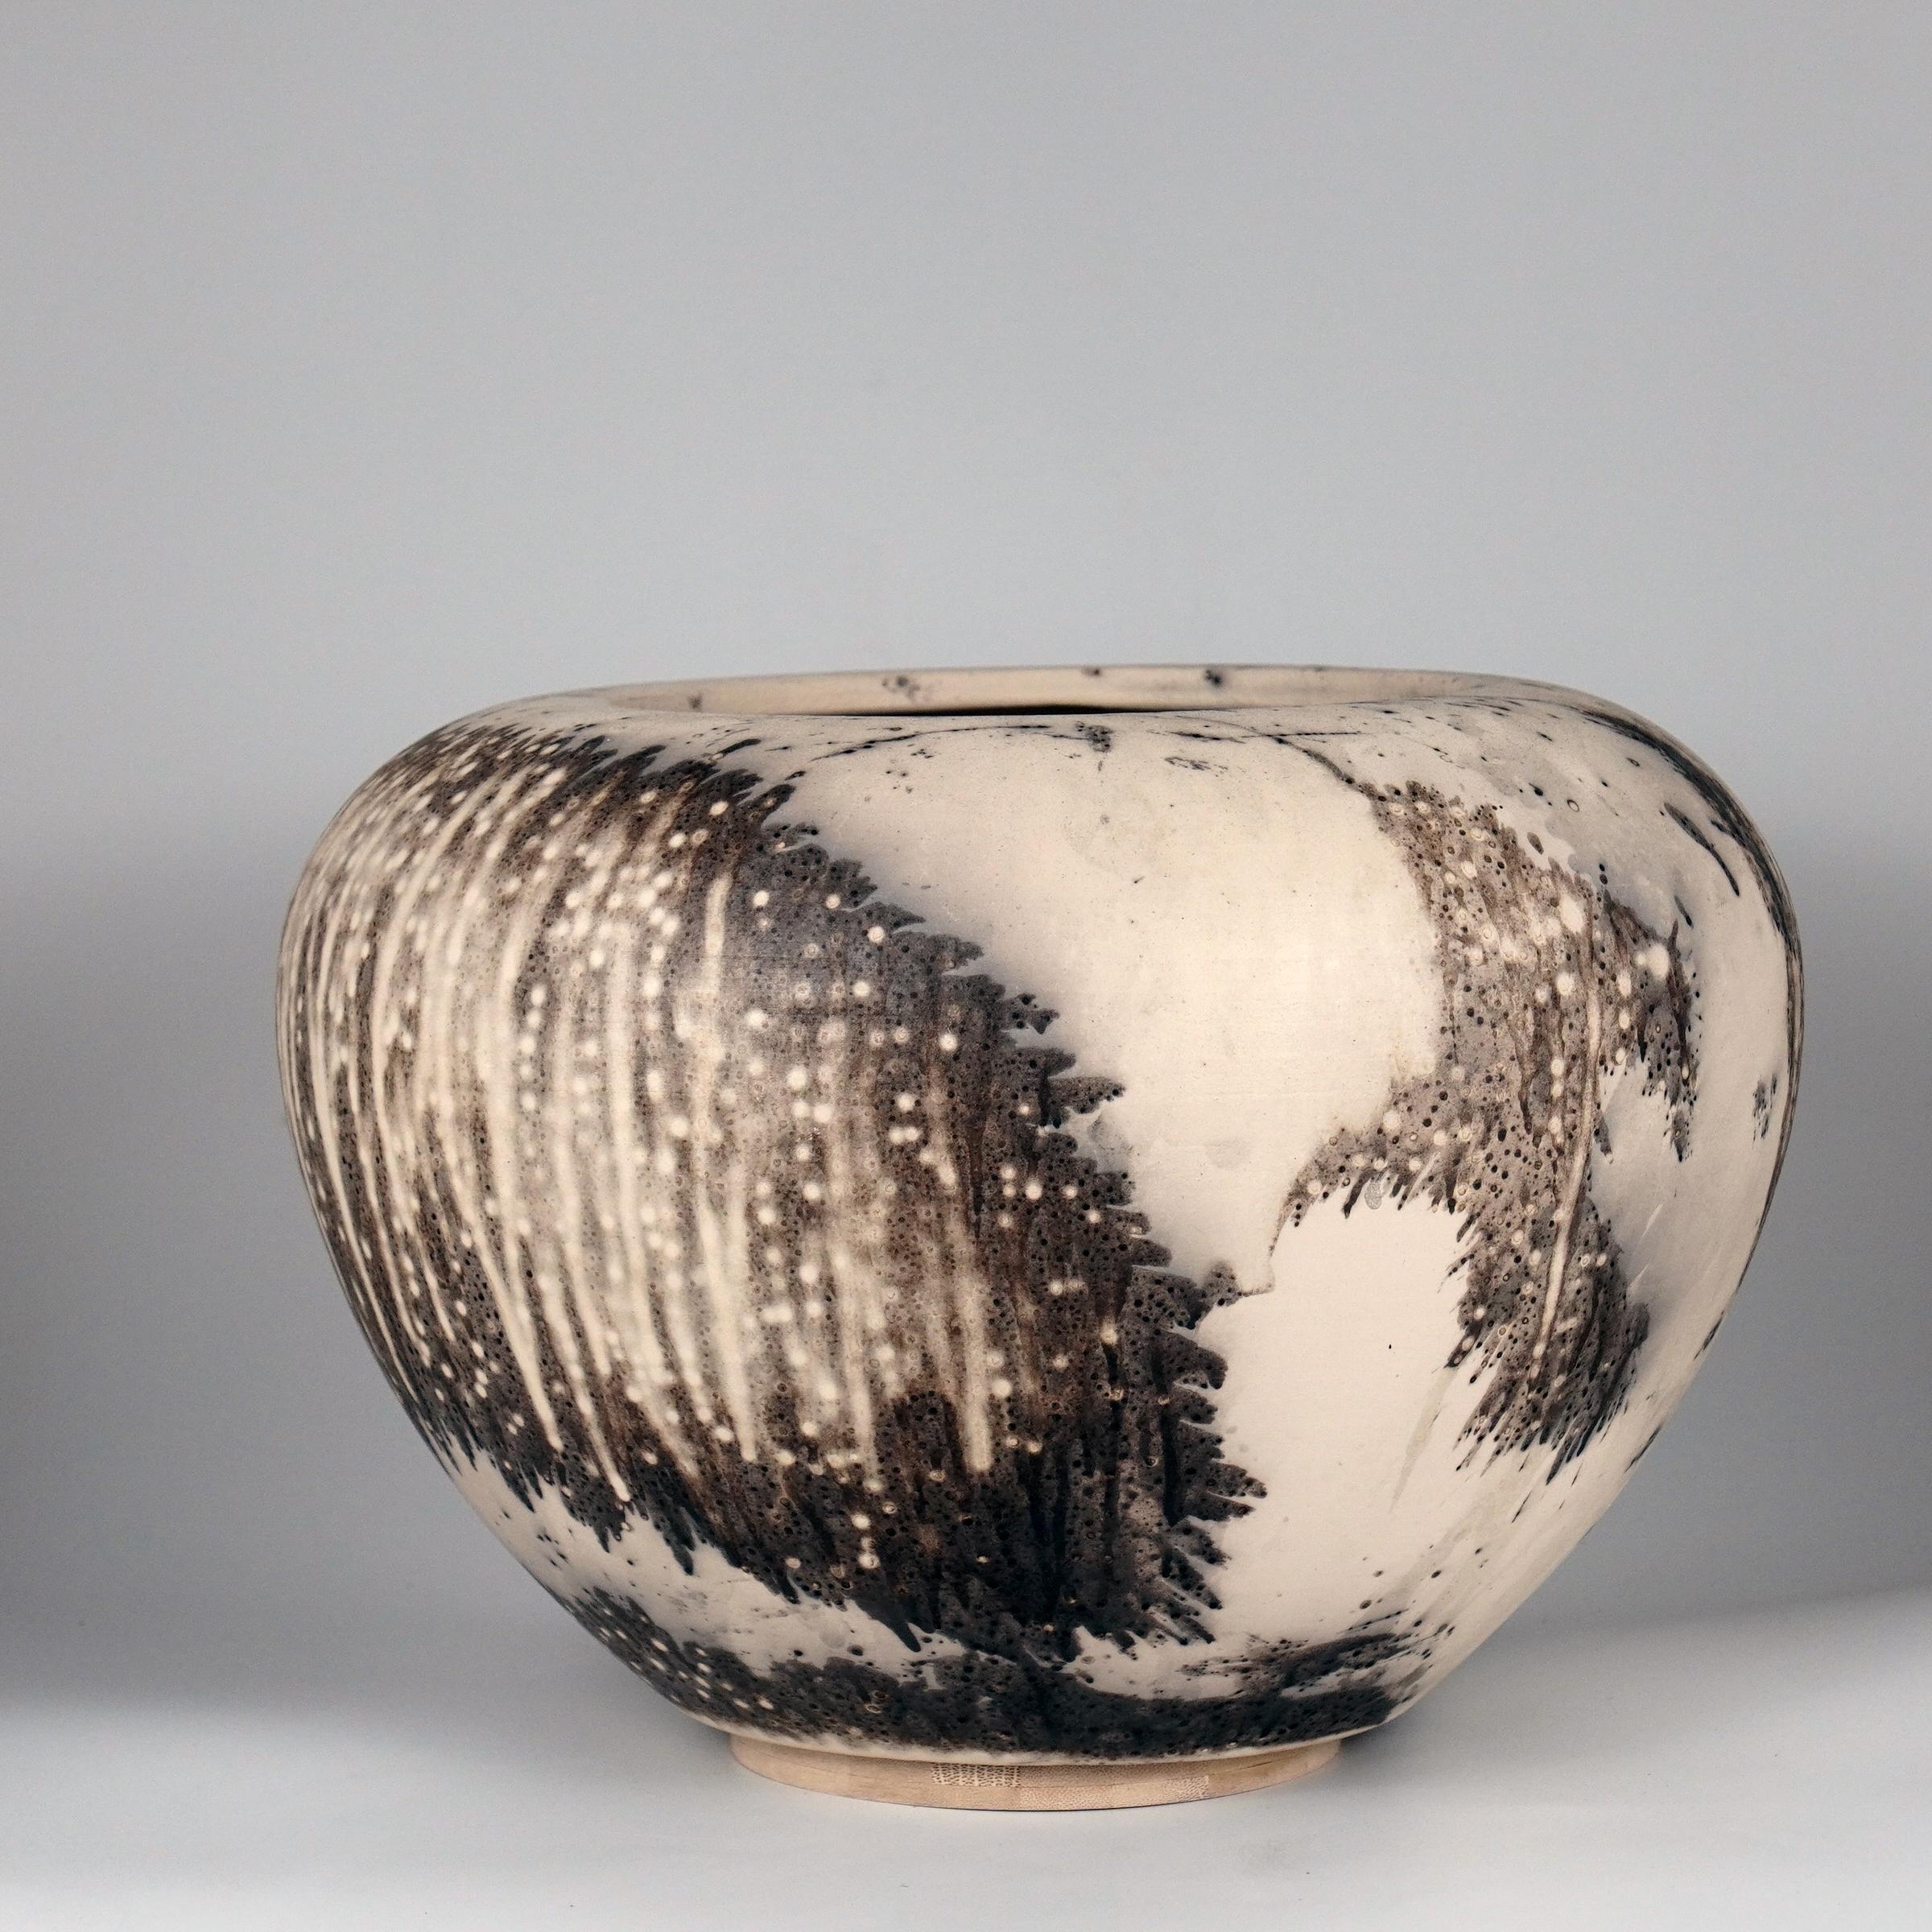 Vorbestellung ~ Tsubomi ~ Knospe

Ein faszinierender Anblick, sobald die regenbogenartigen Patinas ins Auge fallen. Die Tsubomi-Vase ist eine breite Vase der Art-Serie, die an eine ungeöffnete Blütenknospe erinnert. Diese Vase wird in jeder Umgebung